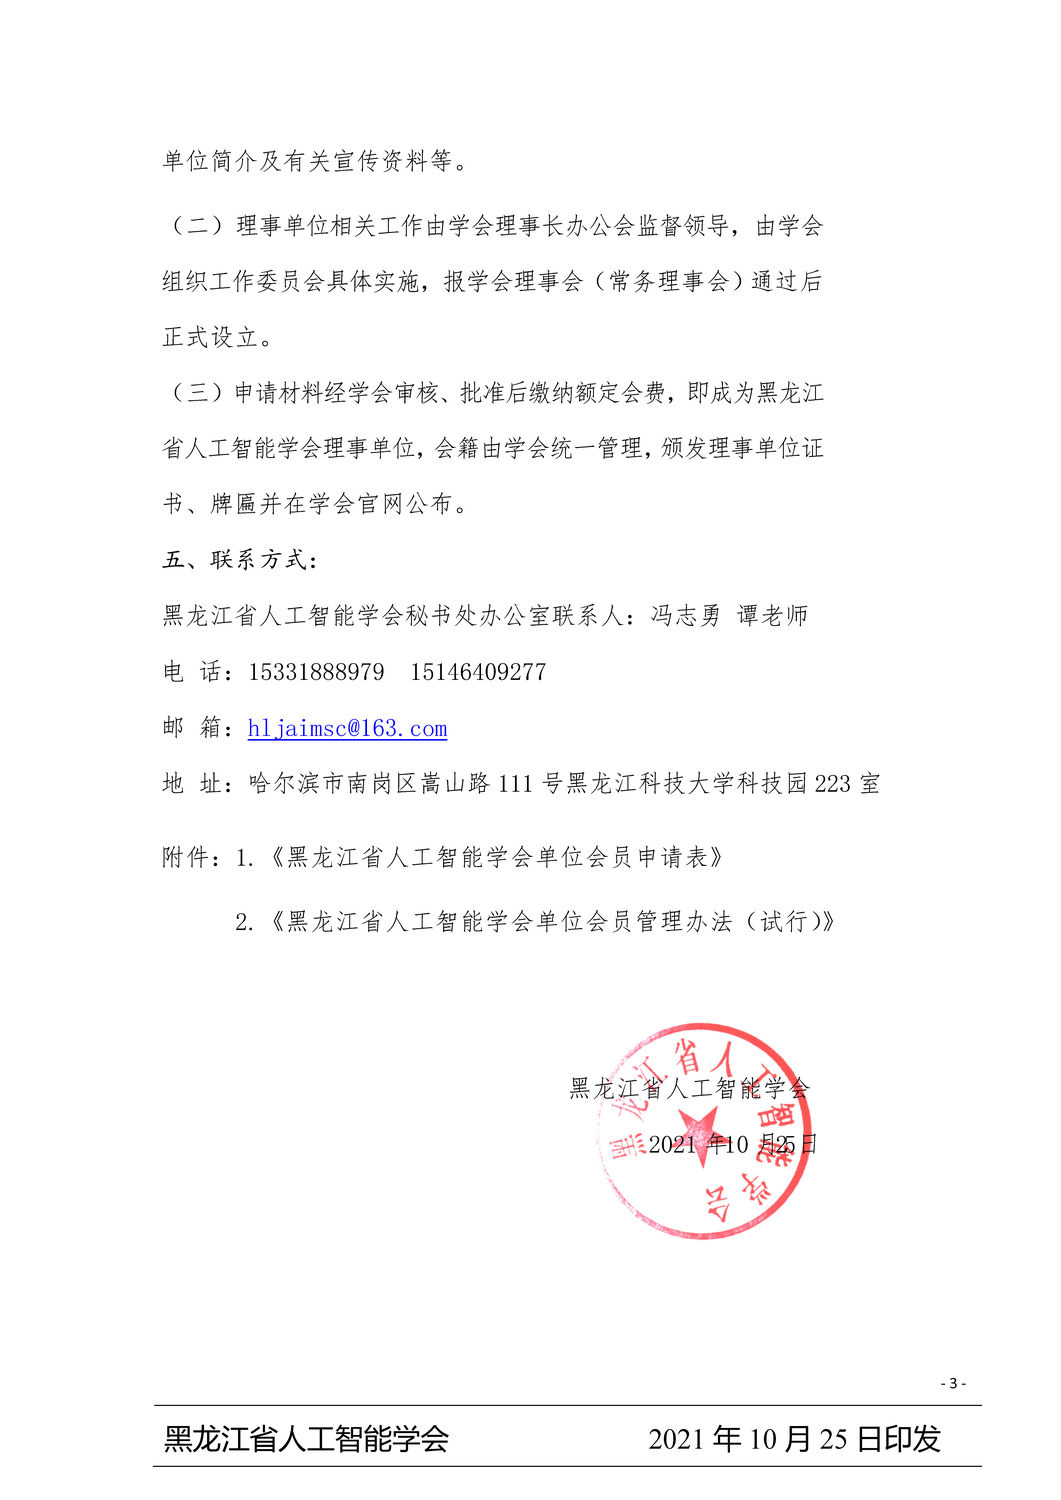 2021年黑龙江省人工智能学会申请理事会员单位的通知_页面_3.jpg